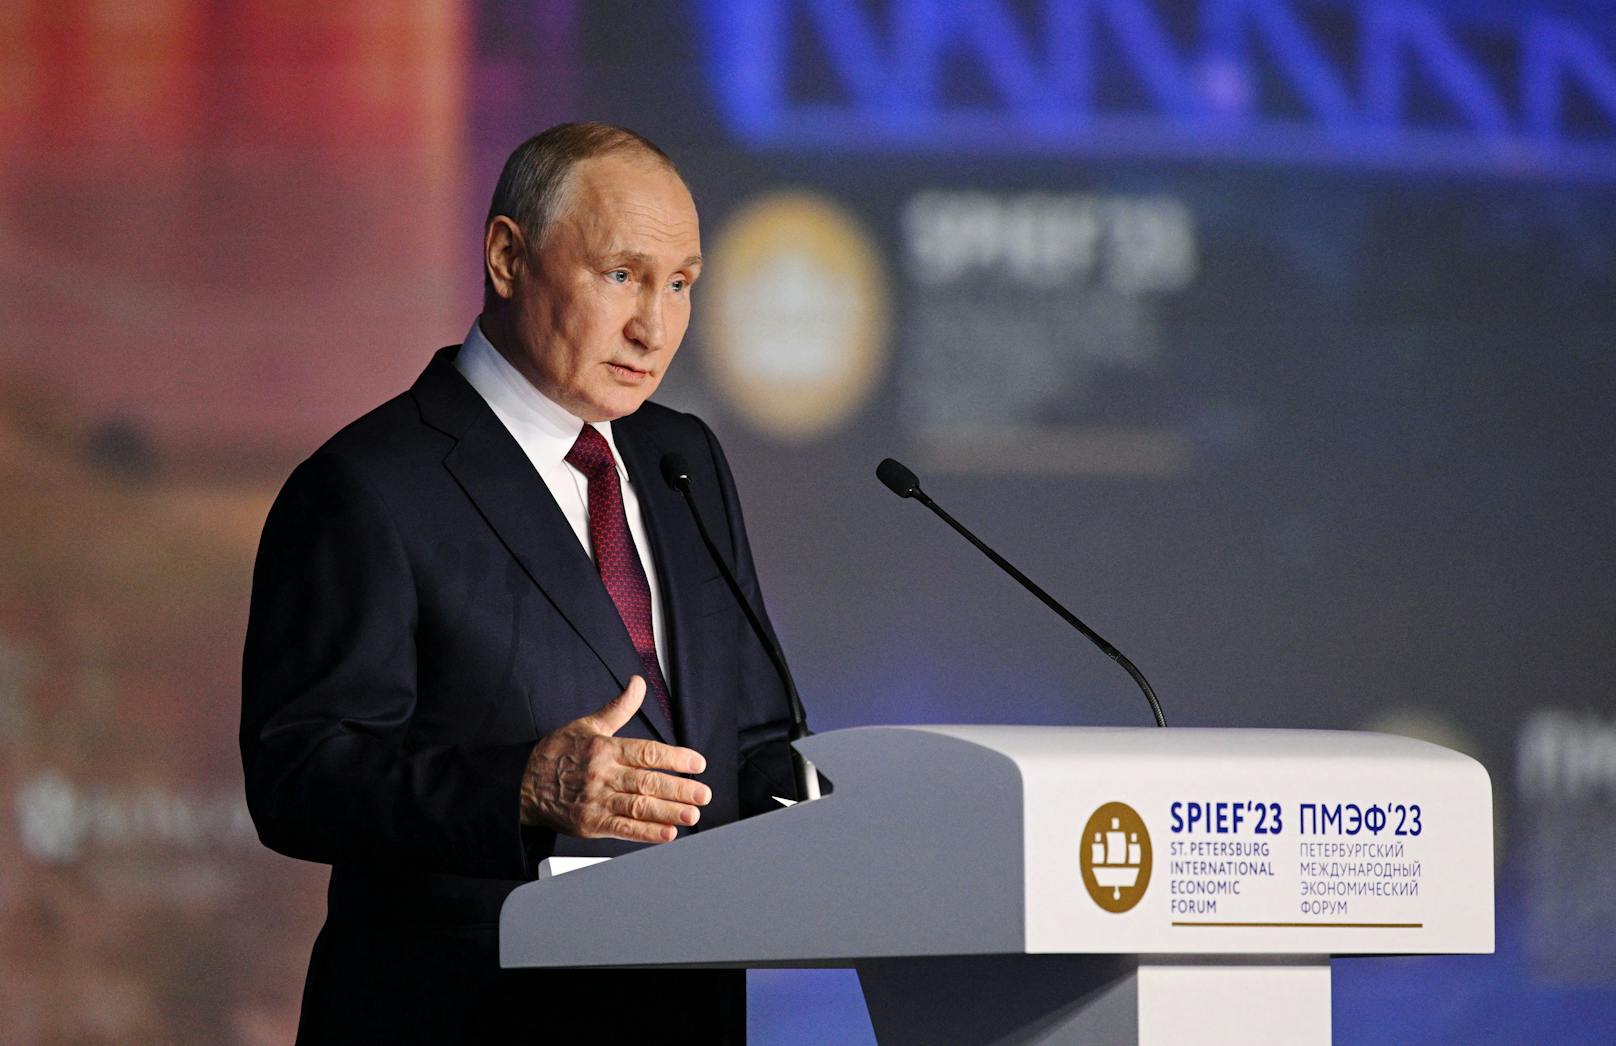 Putin zu Selenski: "Eine Schande für das jüdische Volk"